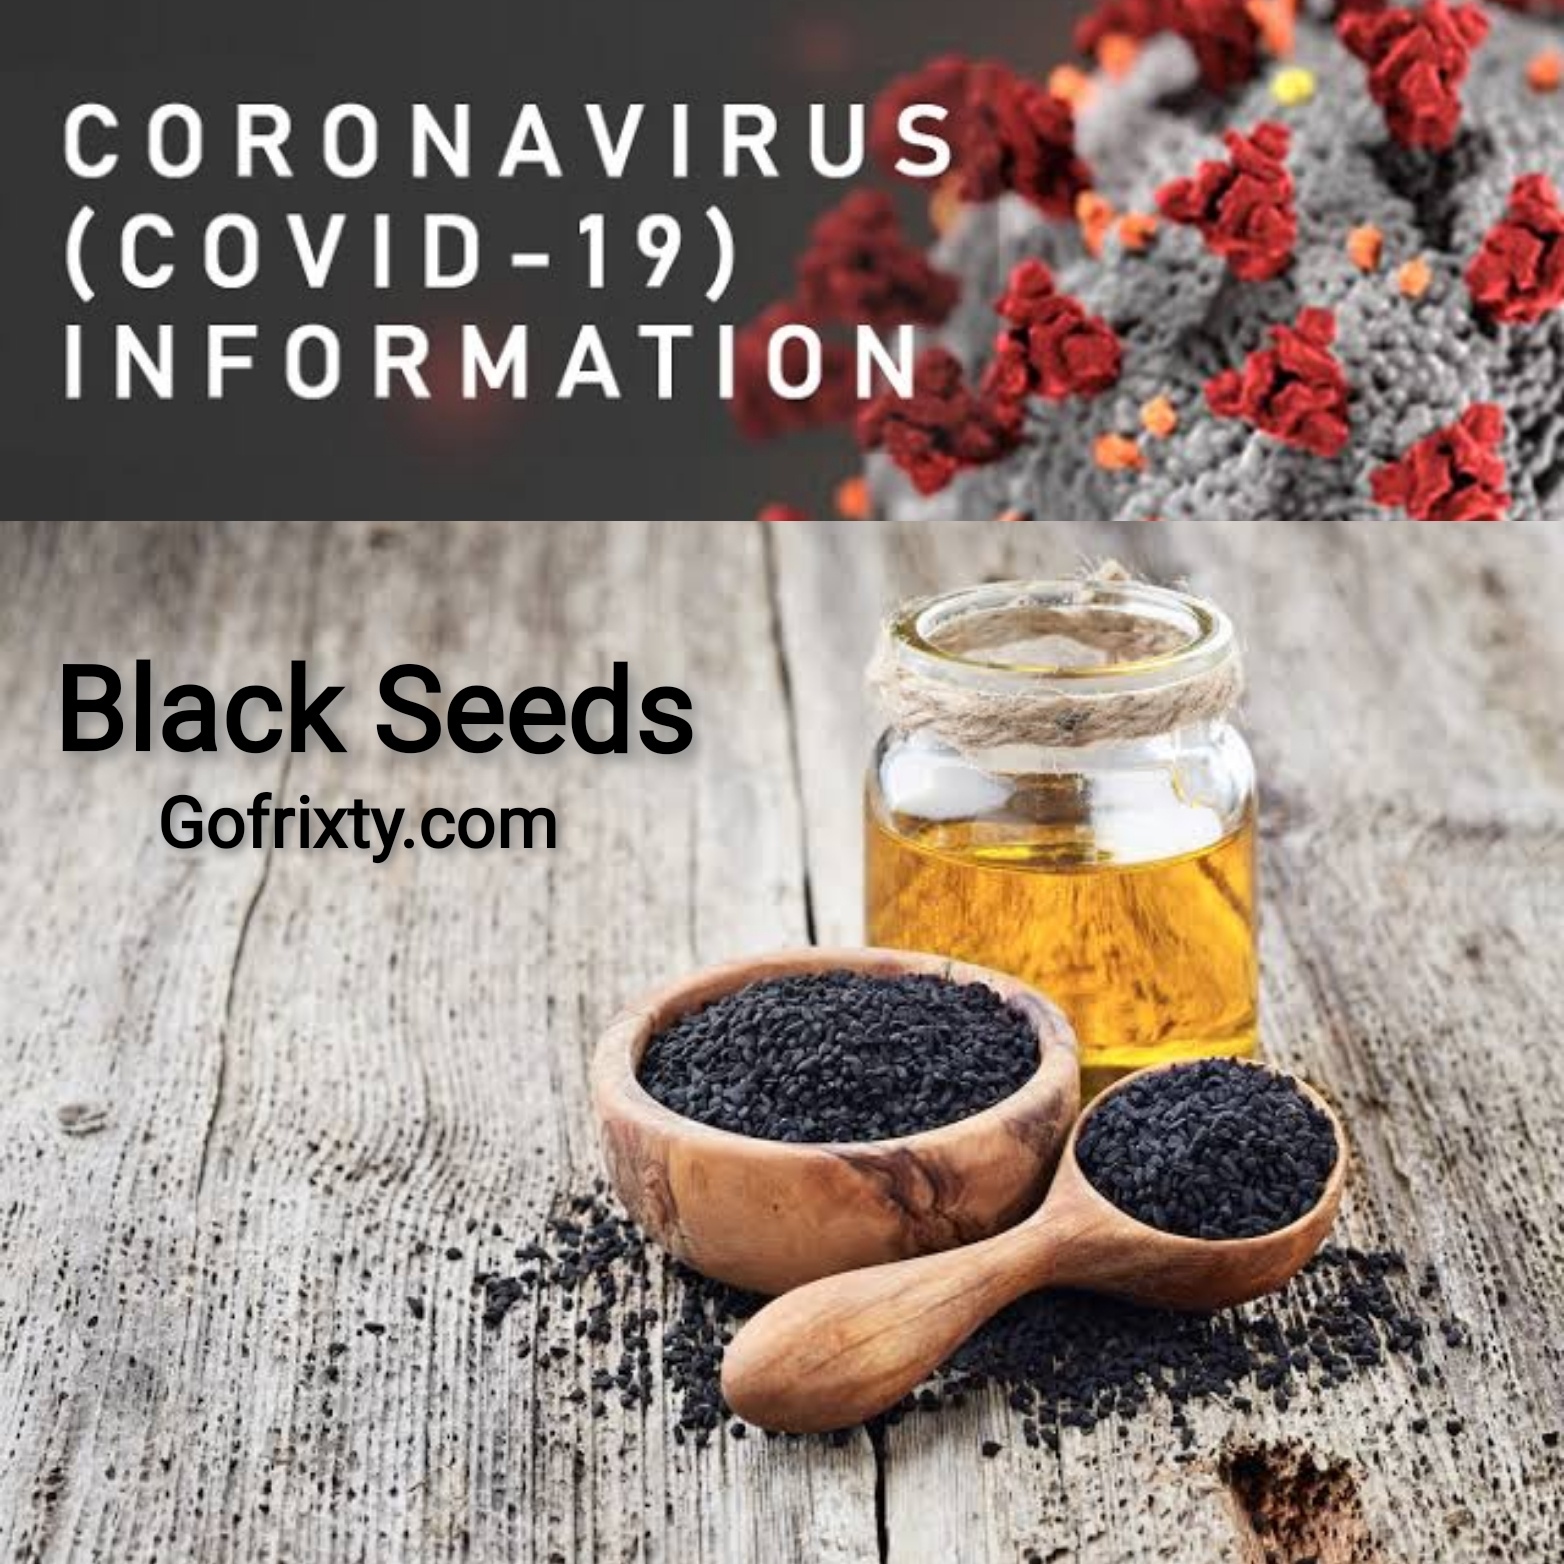 Black seed and corona update